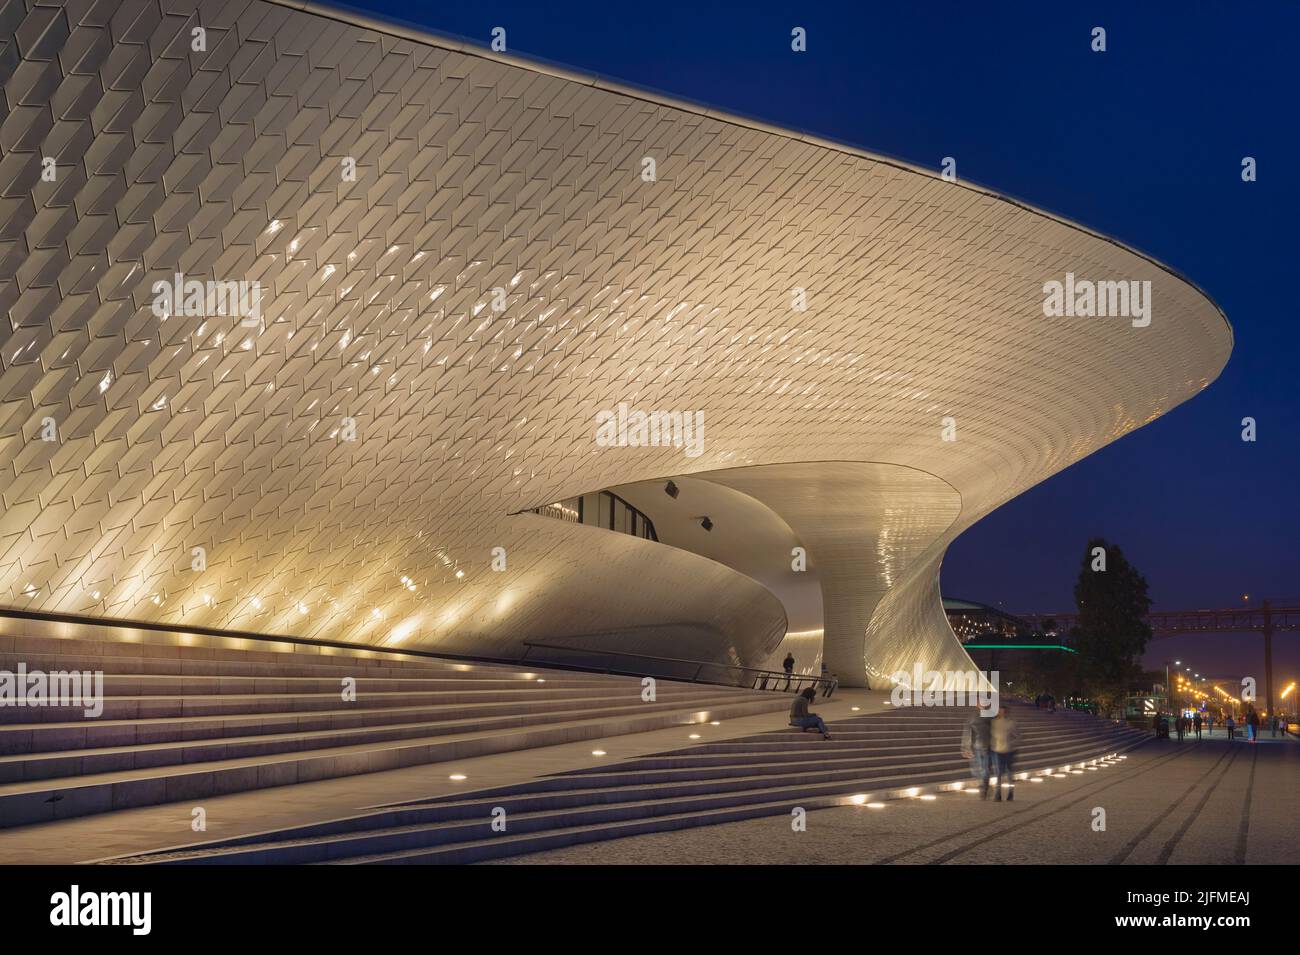 MAAT, Museo de Arte, Arquitectura y tecnología en la noche, el barrio de Belem, Lisboa, Portugal Foto de stock